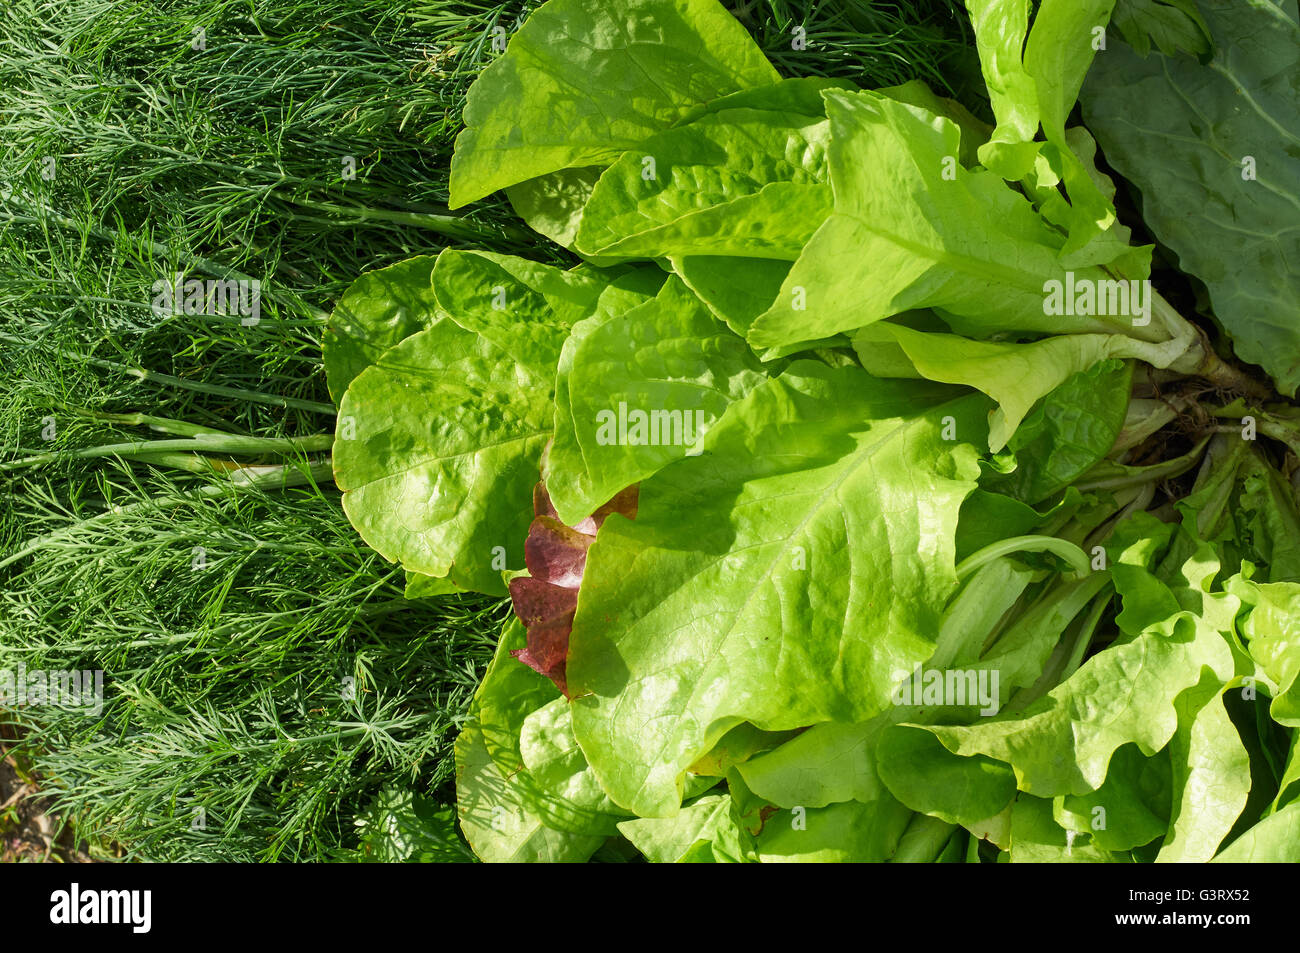 Vegetación composición de ensalada fresca, el eneldo y el perejil. Foto de stock